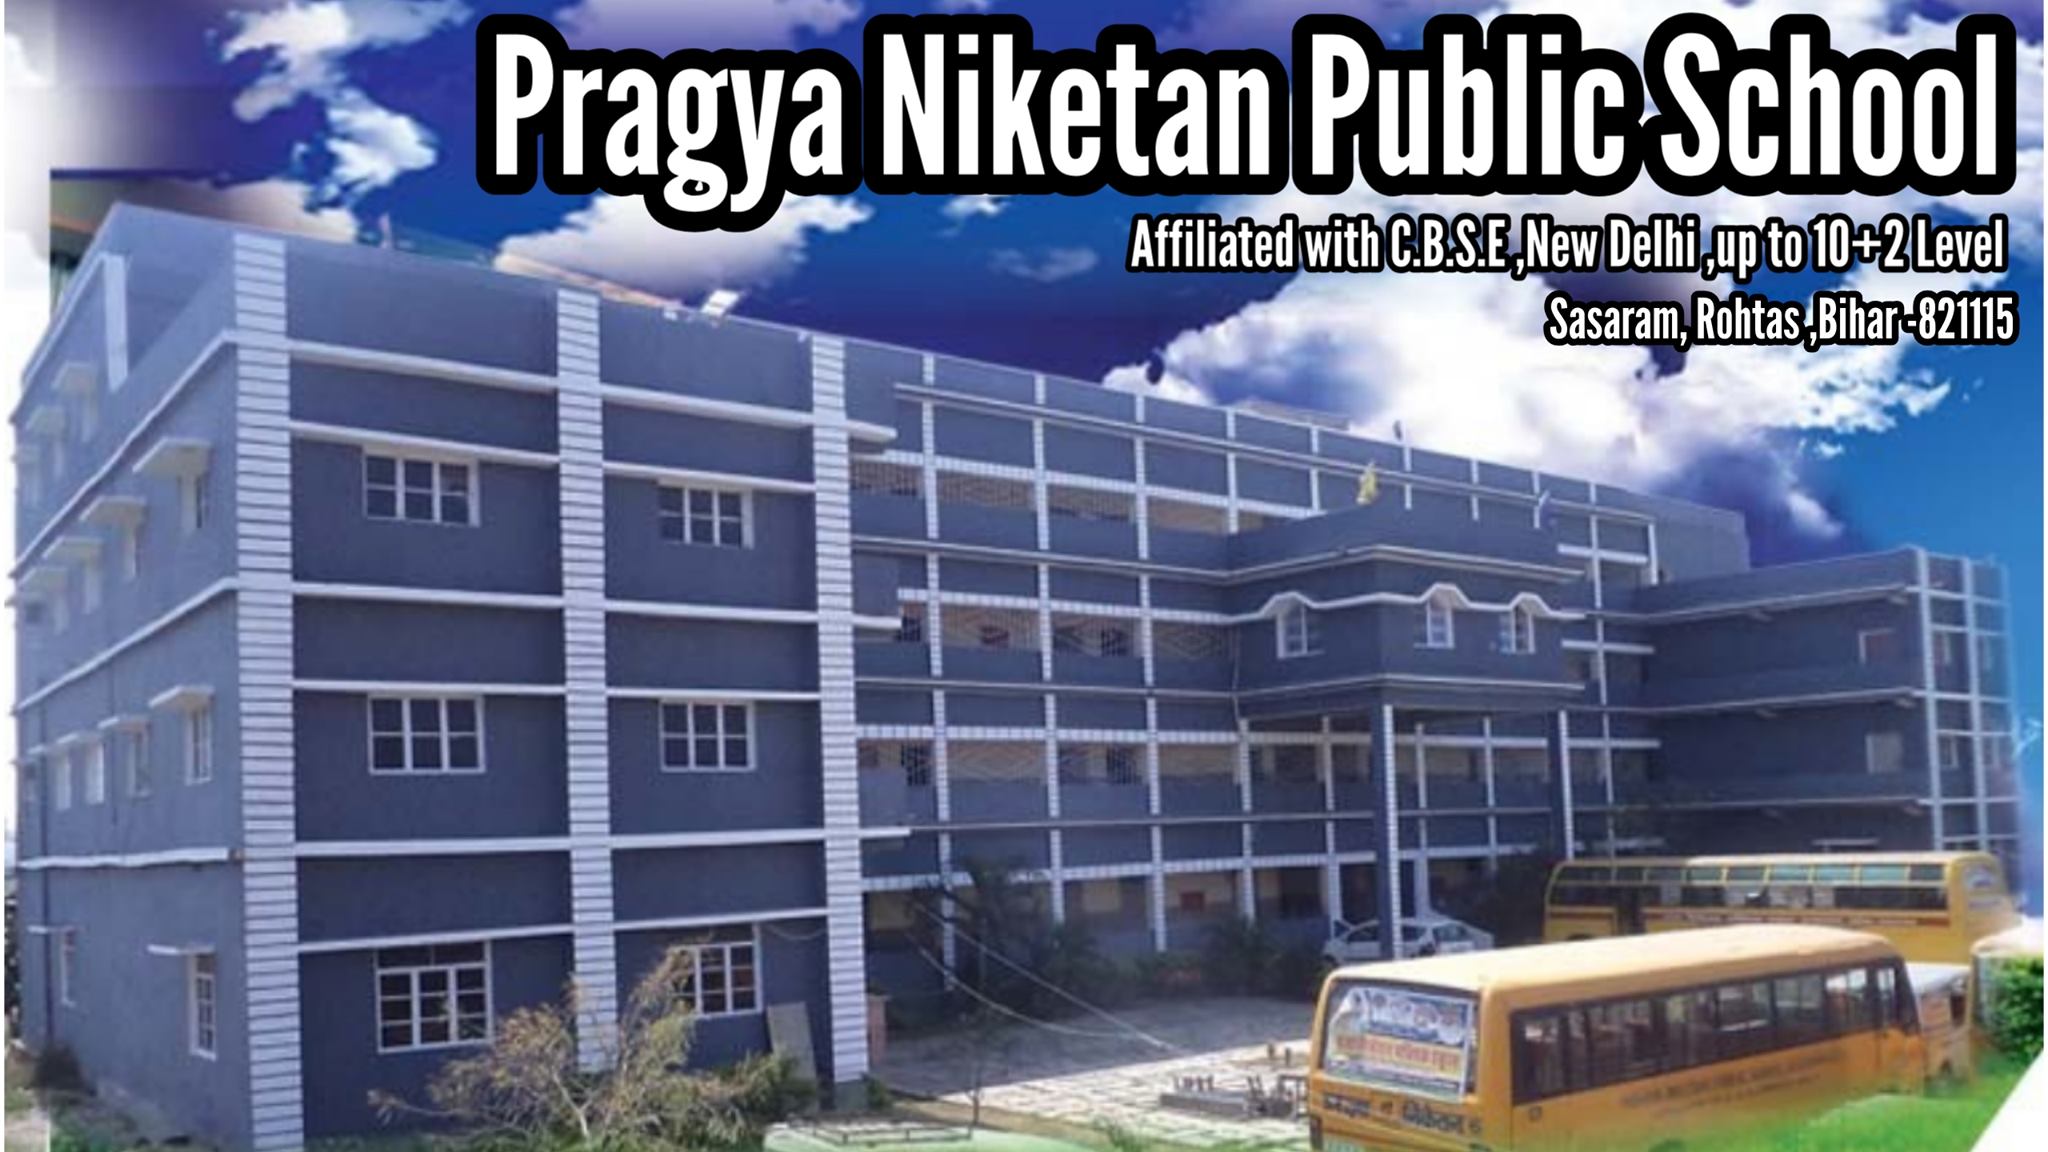 PRAGYA NIKETAN PUBLIC SCHOOL